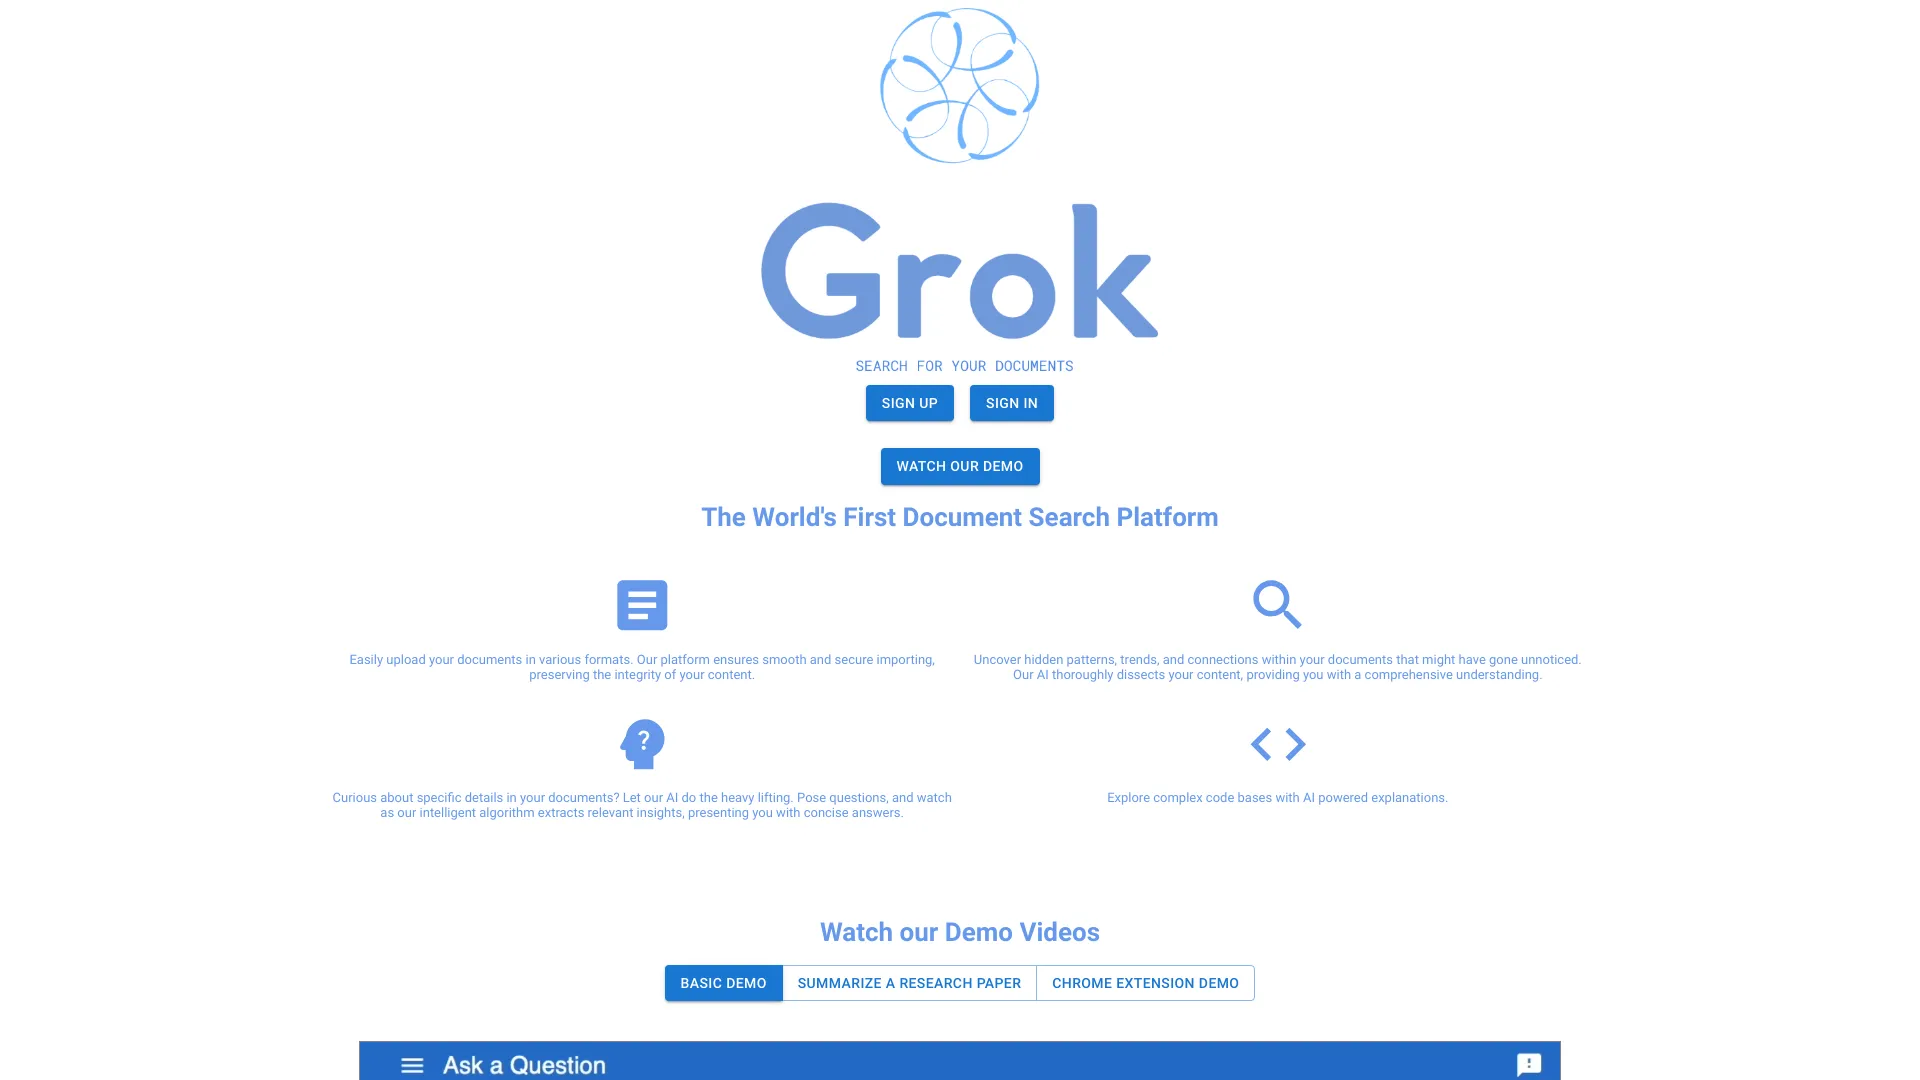 The Grok App